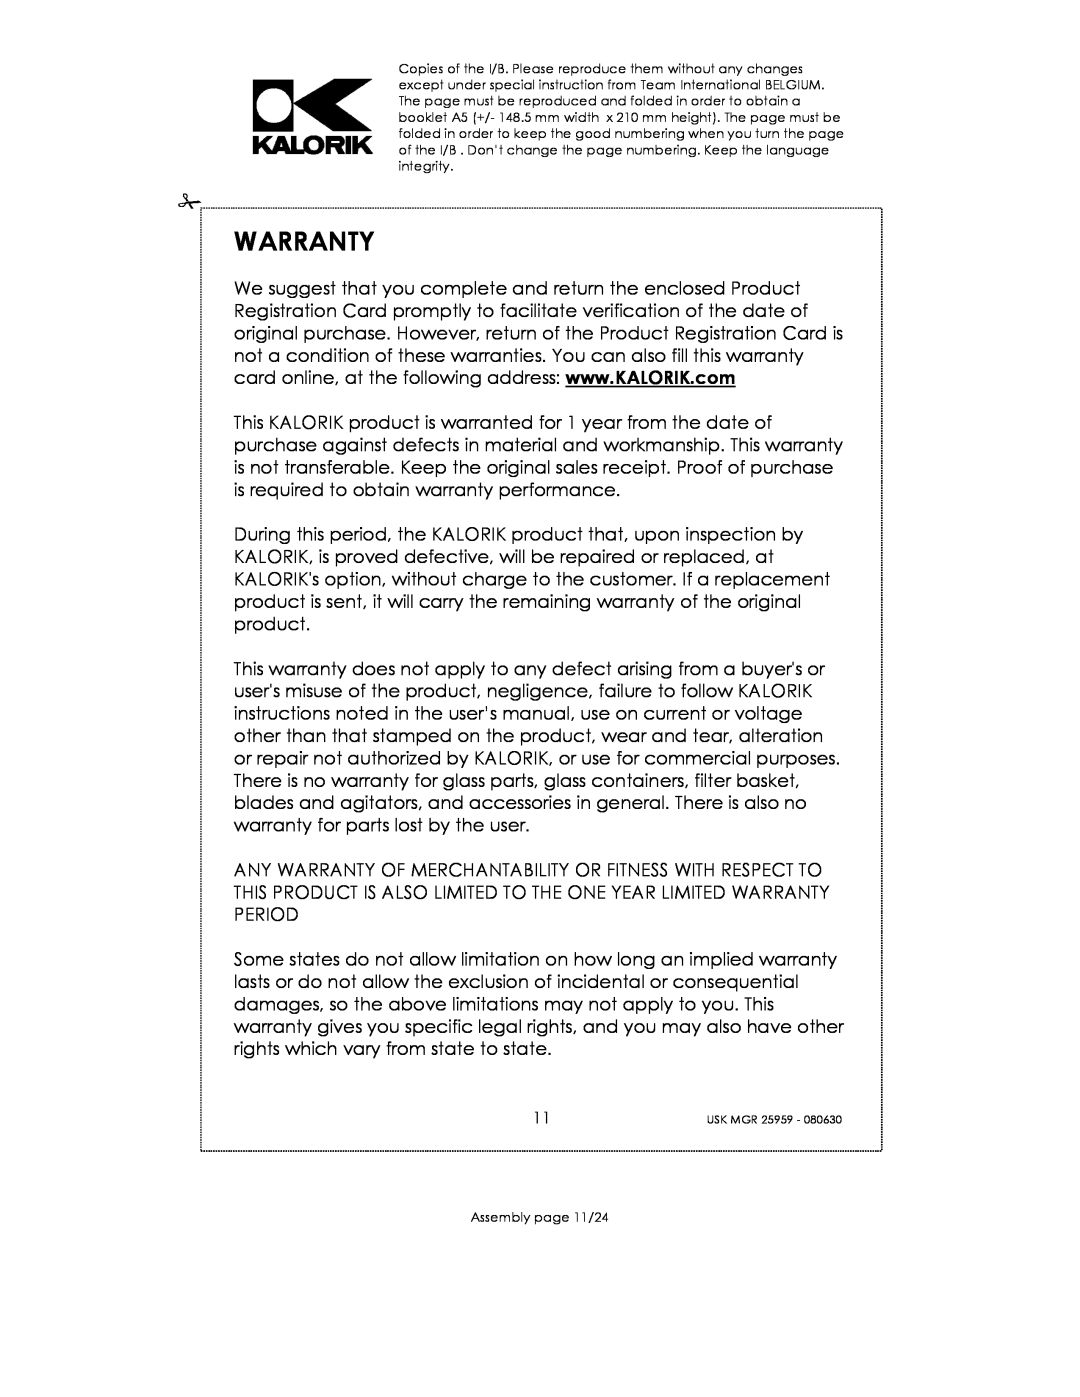 Kalorik USK MGR 25959 manual Warranty, Assembly page 11/24 